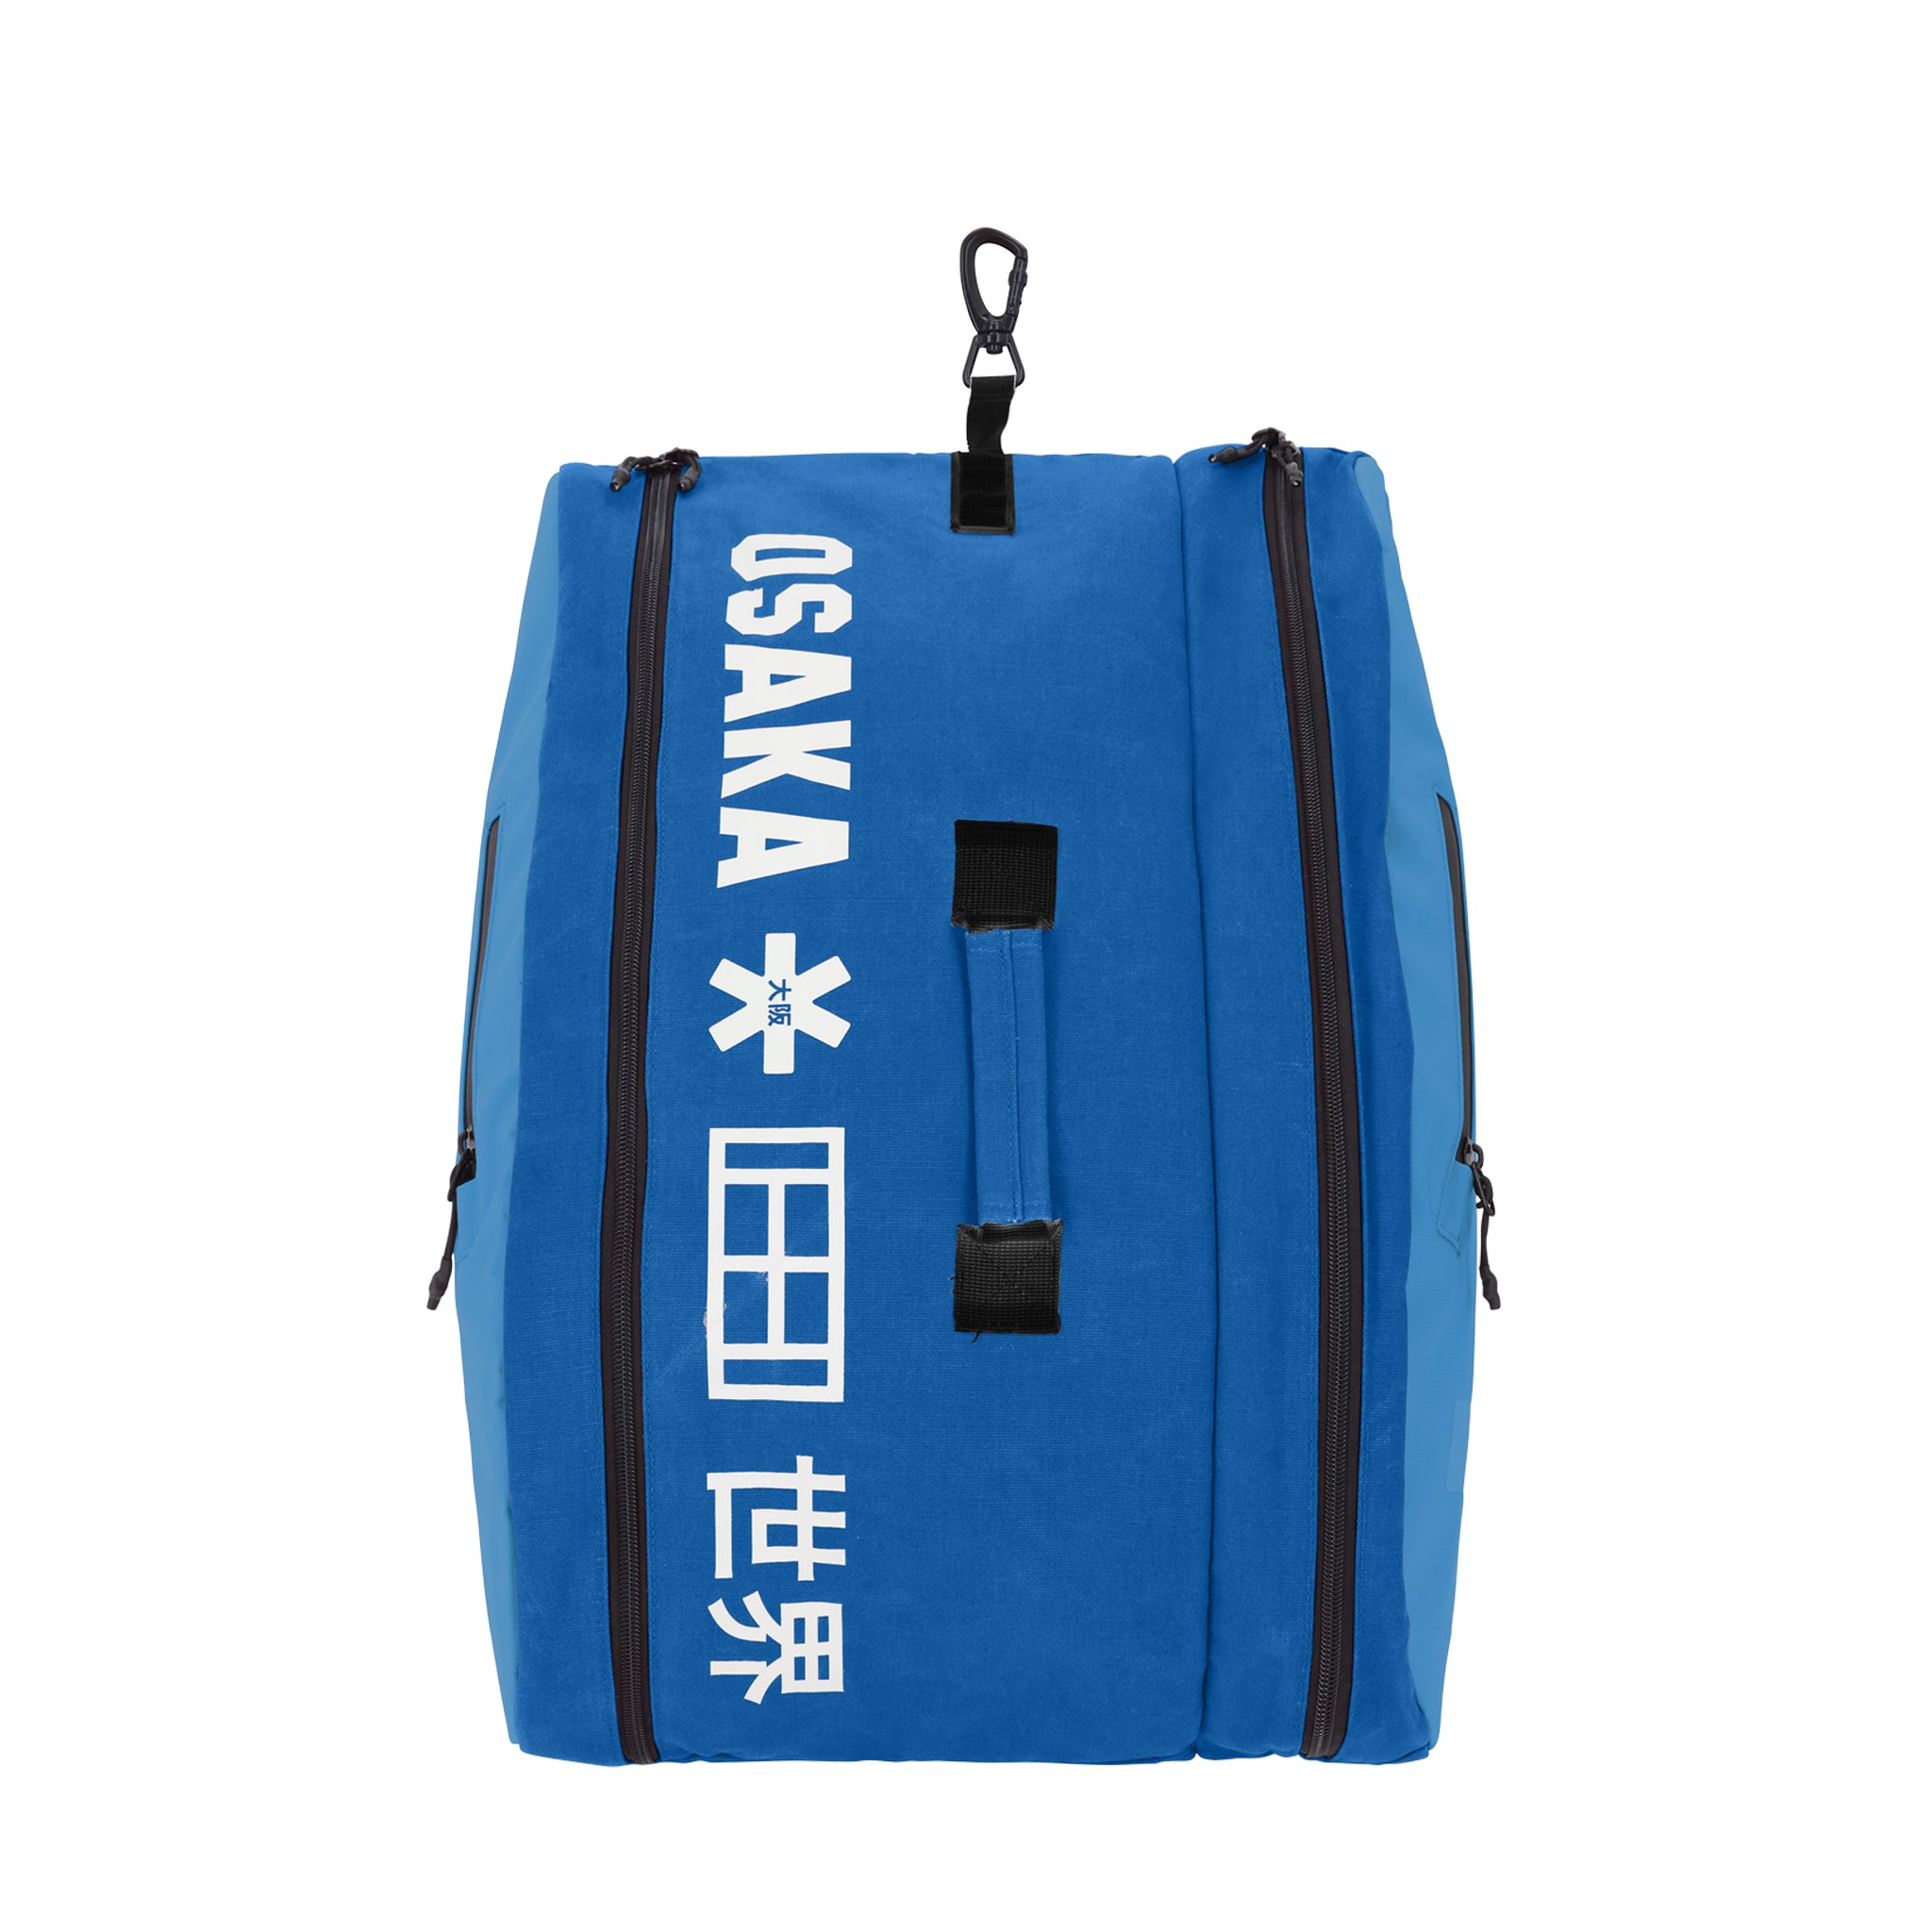 Osaka Pro Tour Medium Padel Bag (Blue/White)